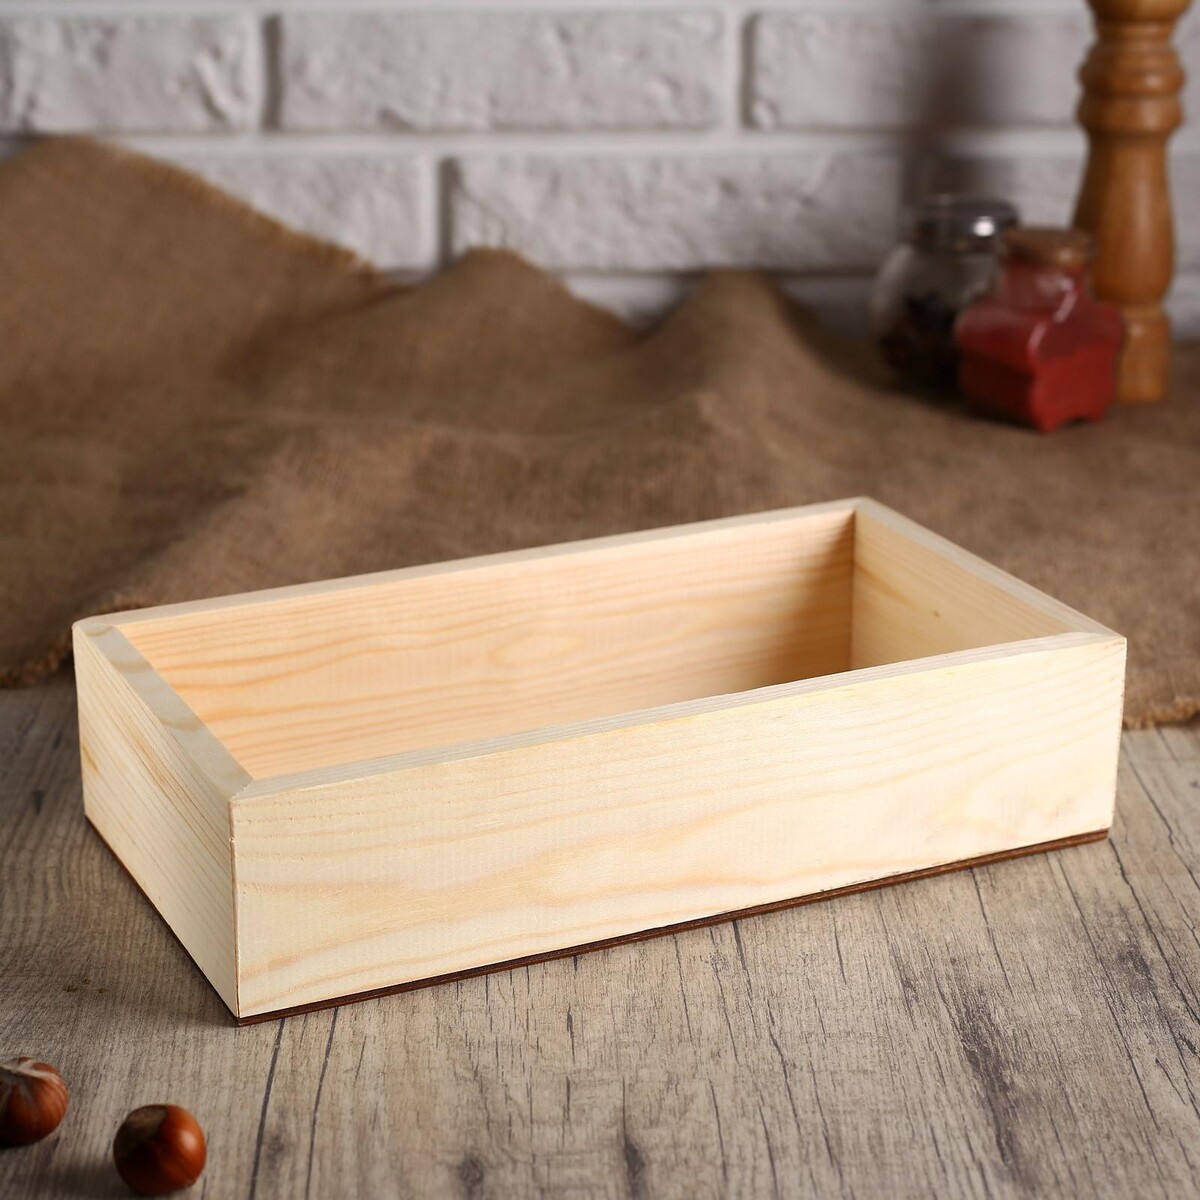 Салфетница деревянная, без покрытия, 24×11×7 см салфетница деревянная без покрытия 24×11×7 см